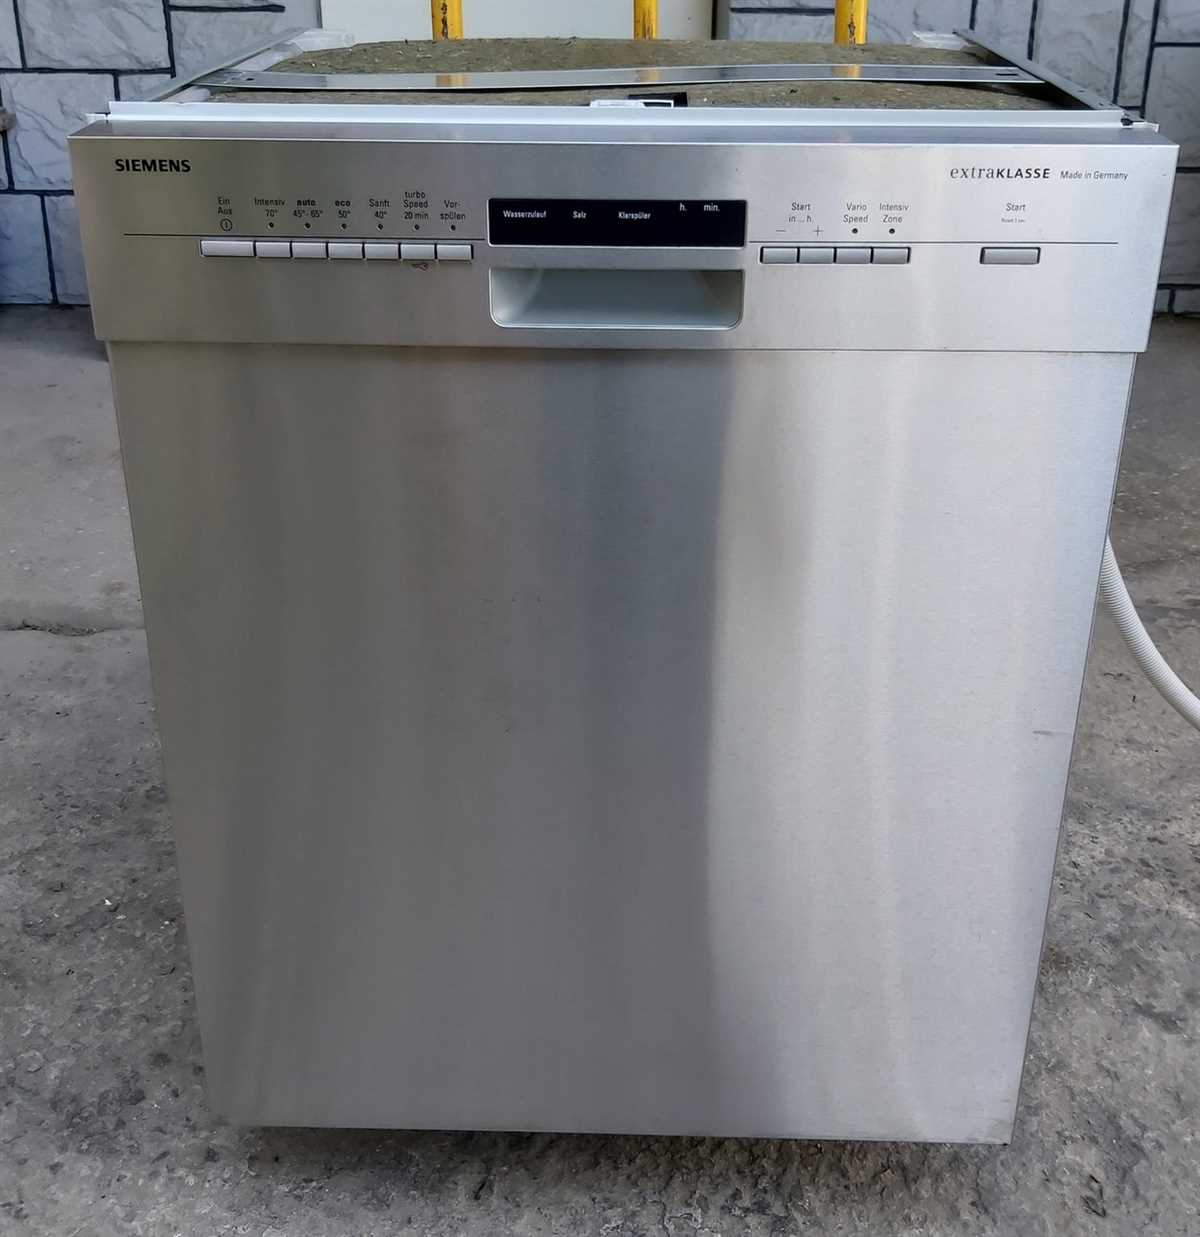 Удобство использования посудомоечных машин Siemens